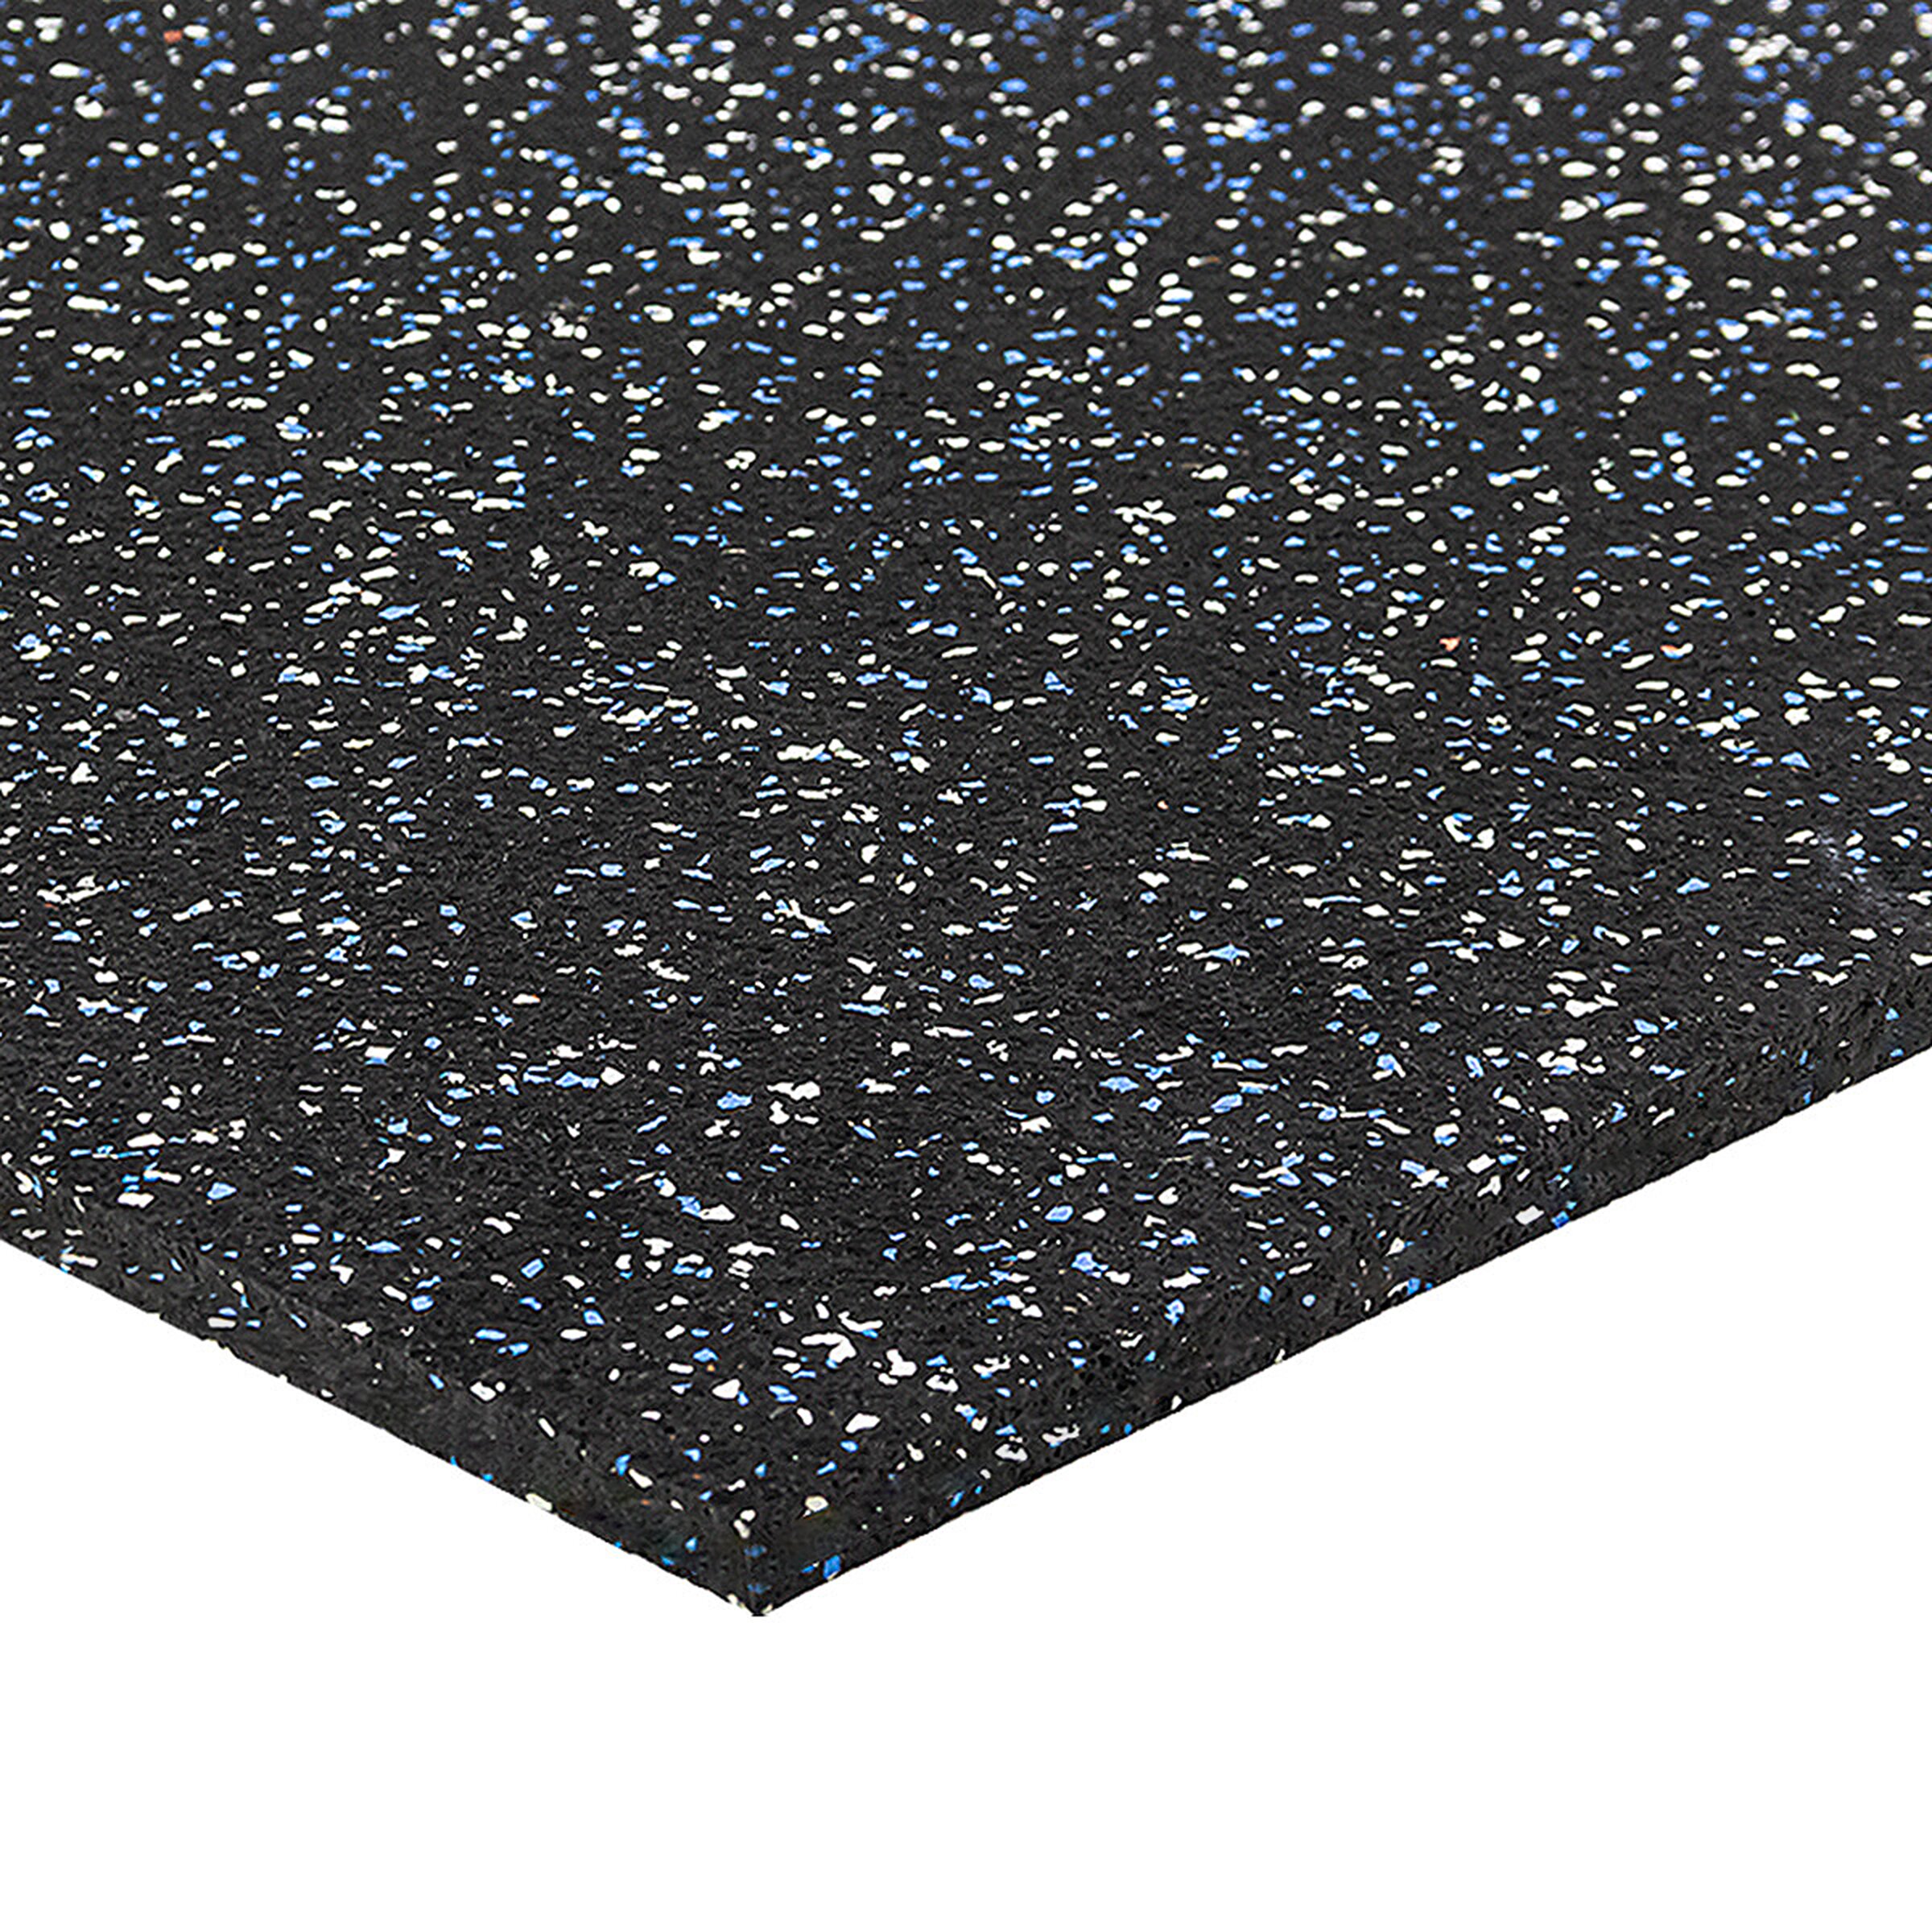 Čierno-bielo-modrá gumová modulová puzzle dlažba (okraj) FLOMA FitFlo SF1050 - dĺžka 100 cm, šírka 100 cm, výška 1 cm